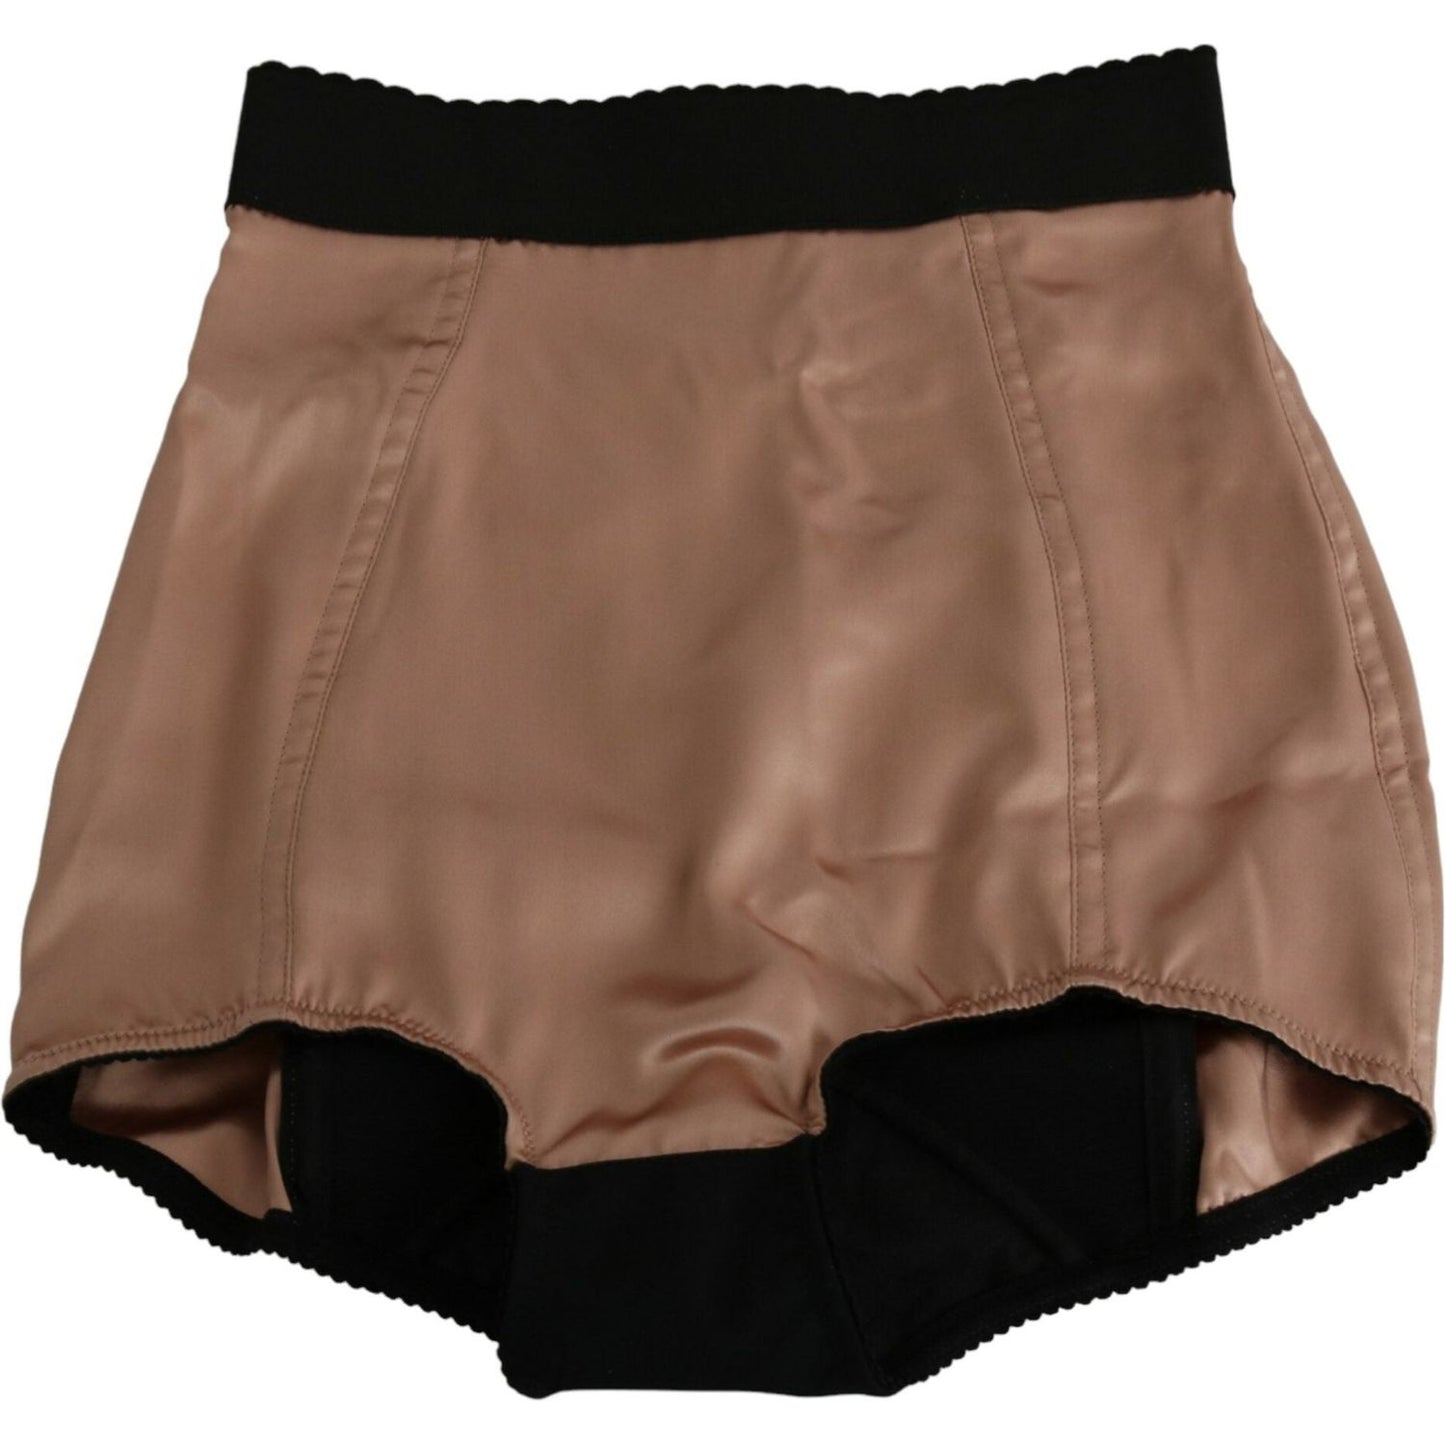 Dolce & Gabbana Silk High Waist Mini Hot Pants beige-silk-high-waist-mini-hot-pants-shorts